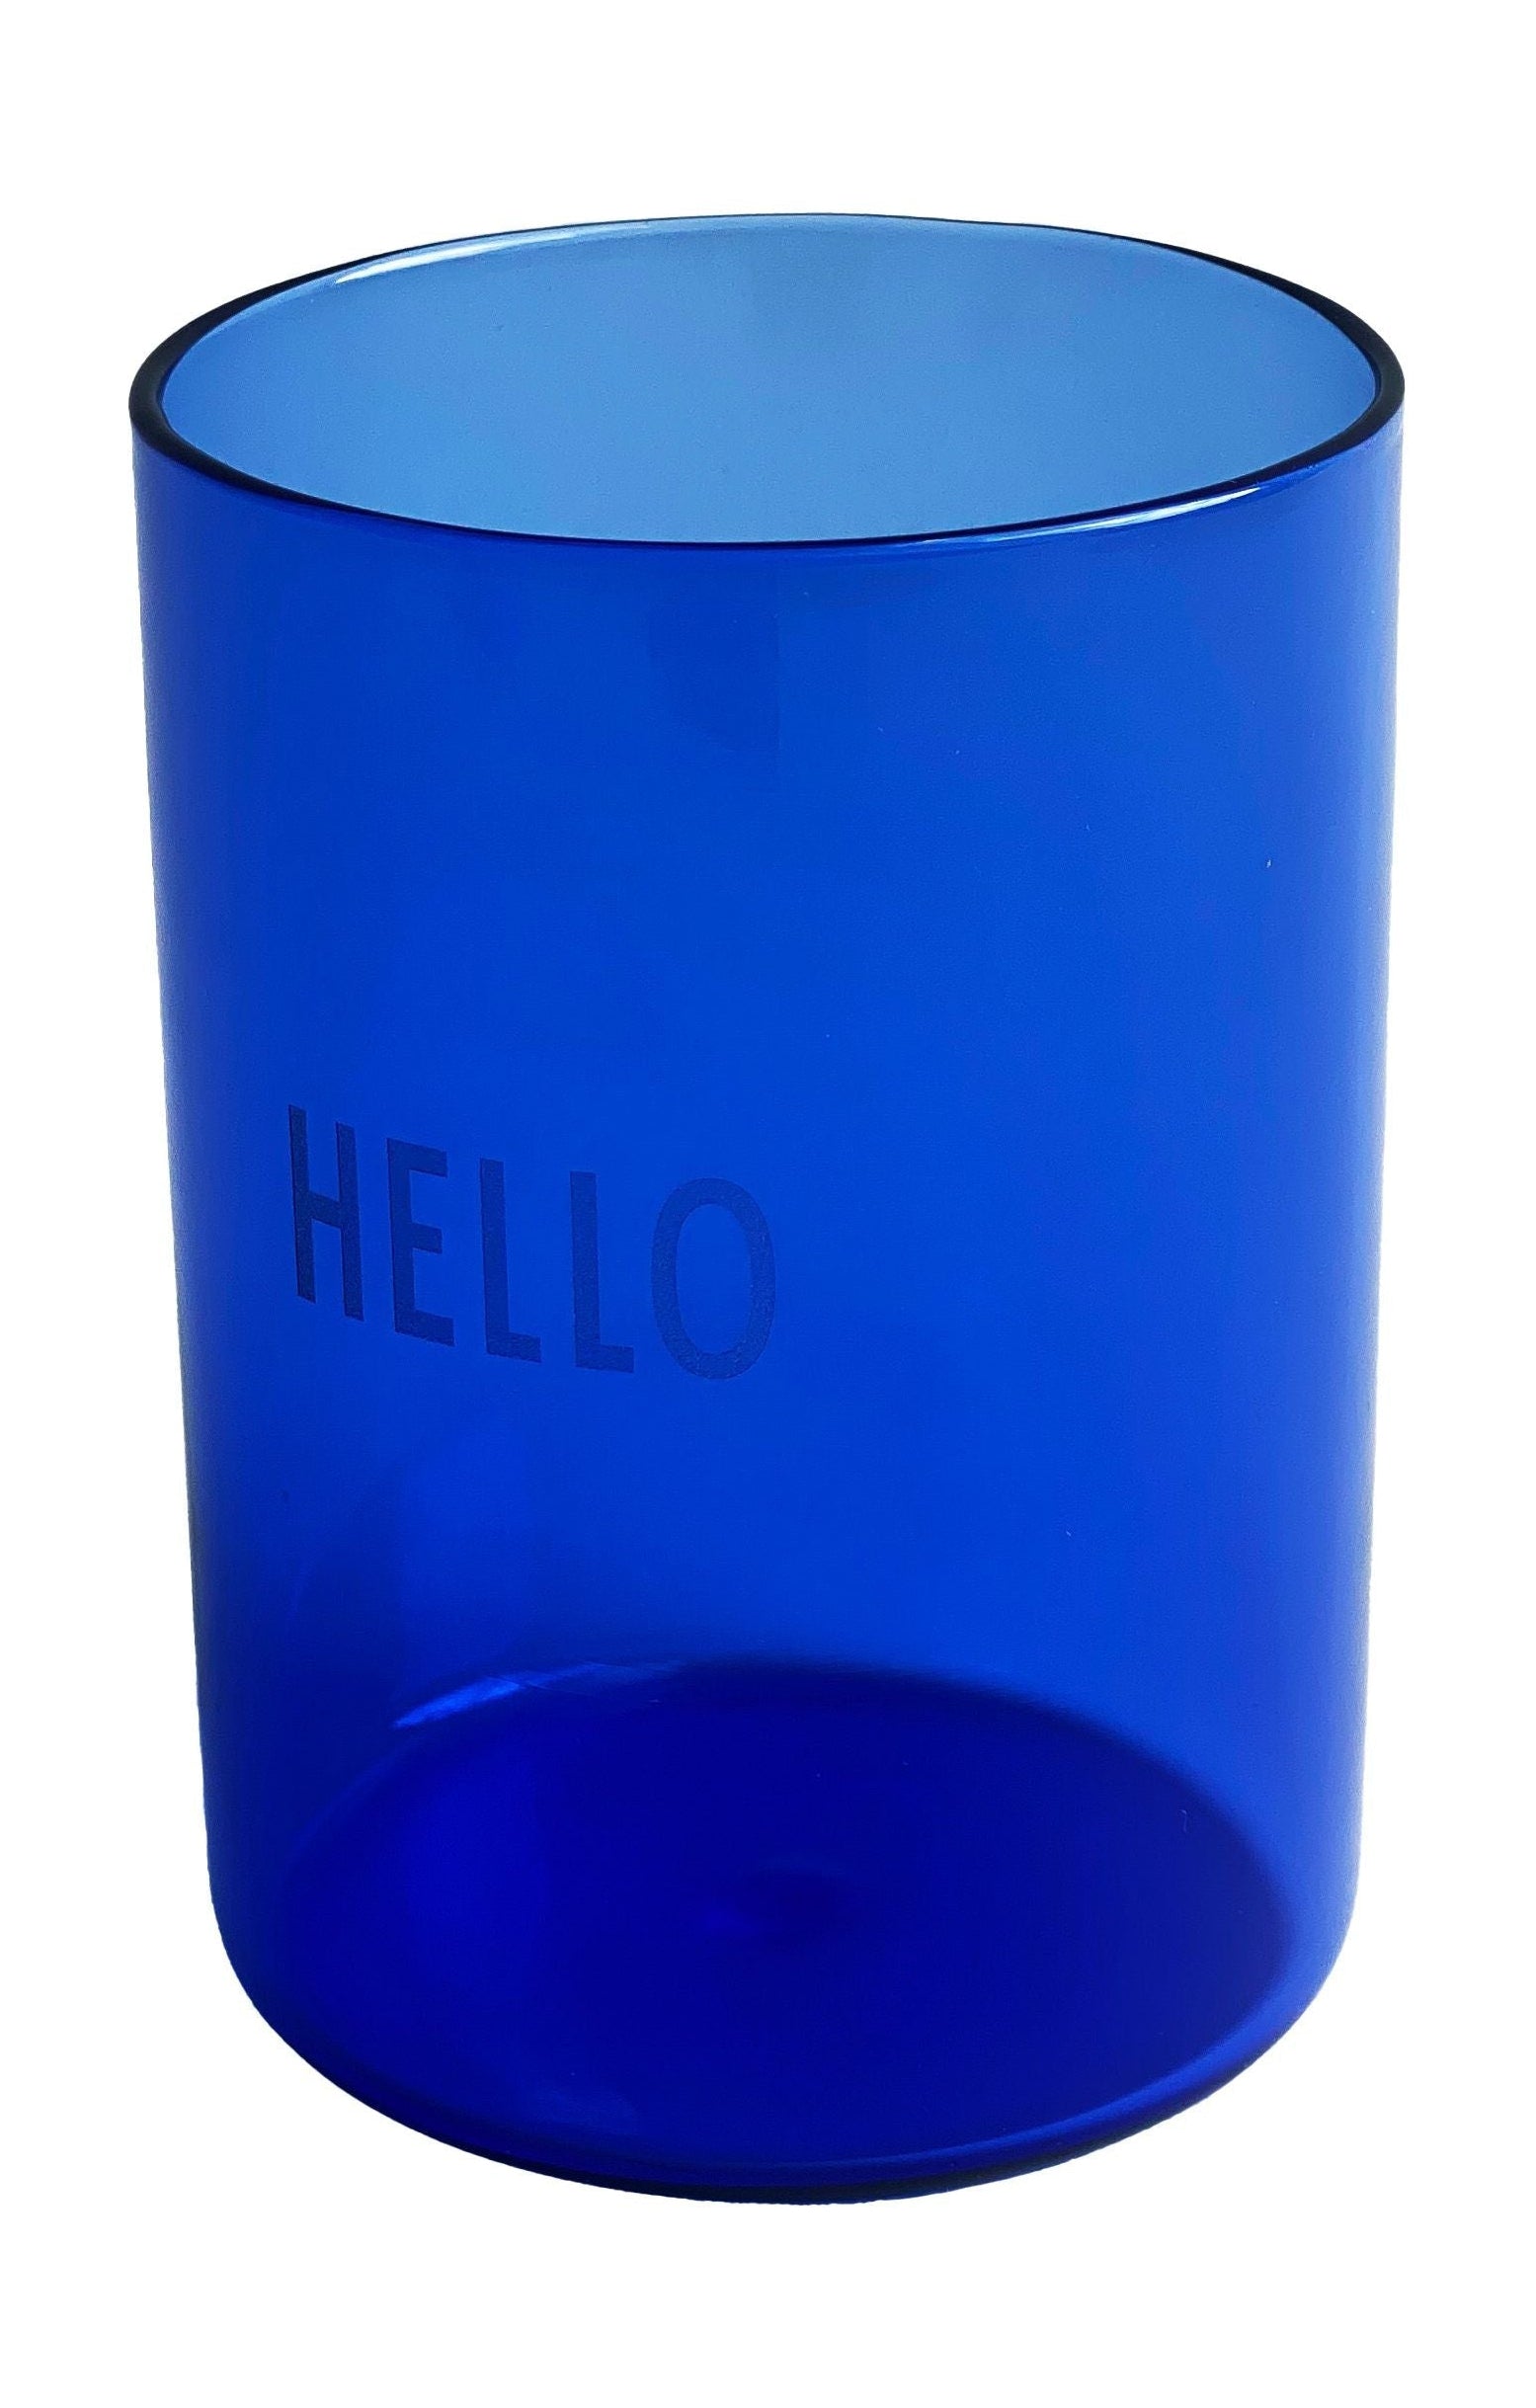 Designbrevs foretrukne drikke glas Hej, blå